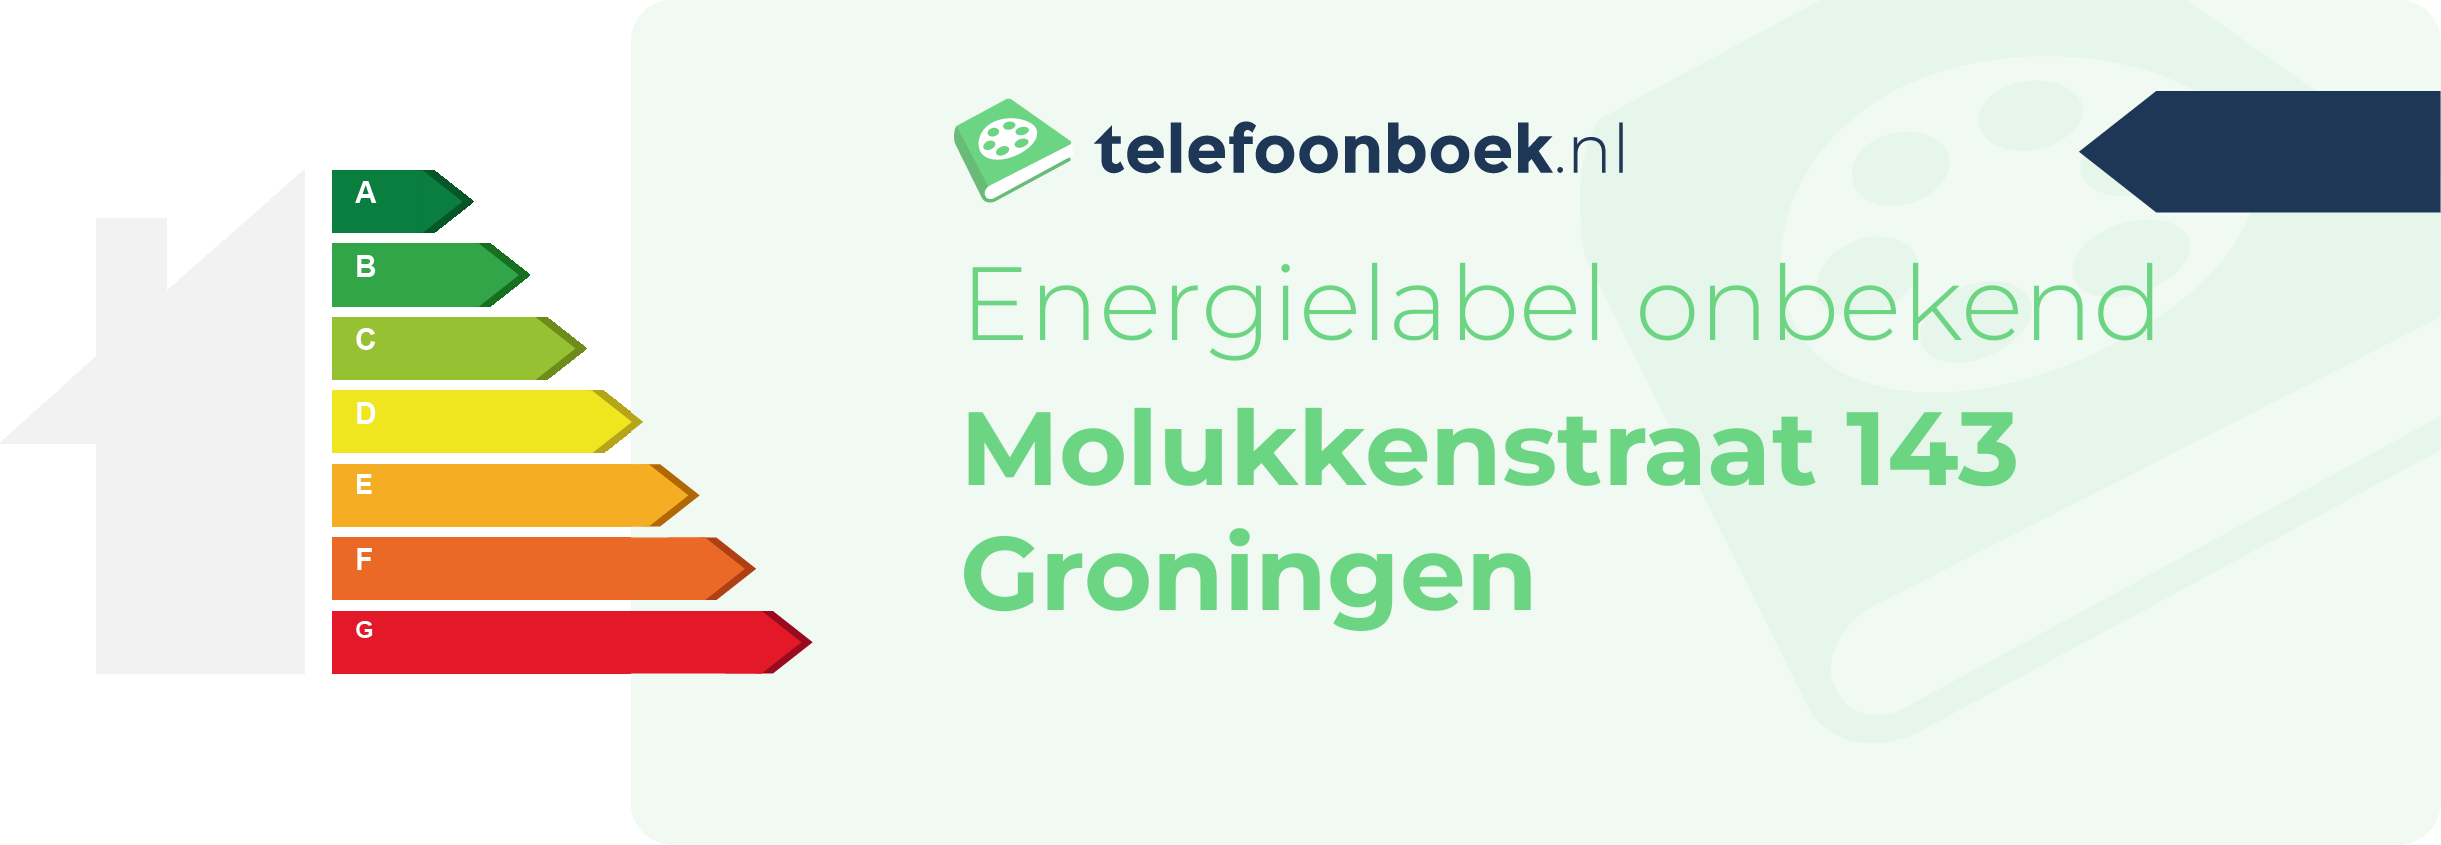 Energielabel Molukkenstraat 143 Groningen